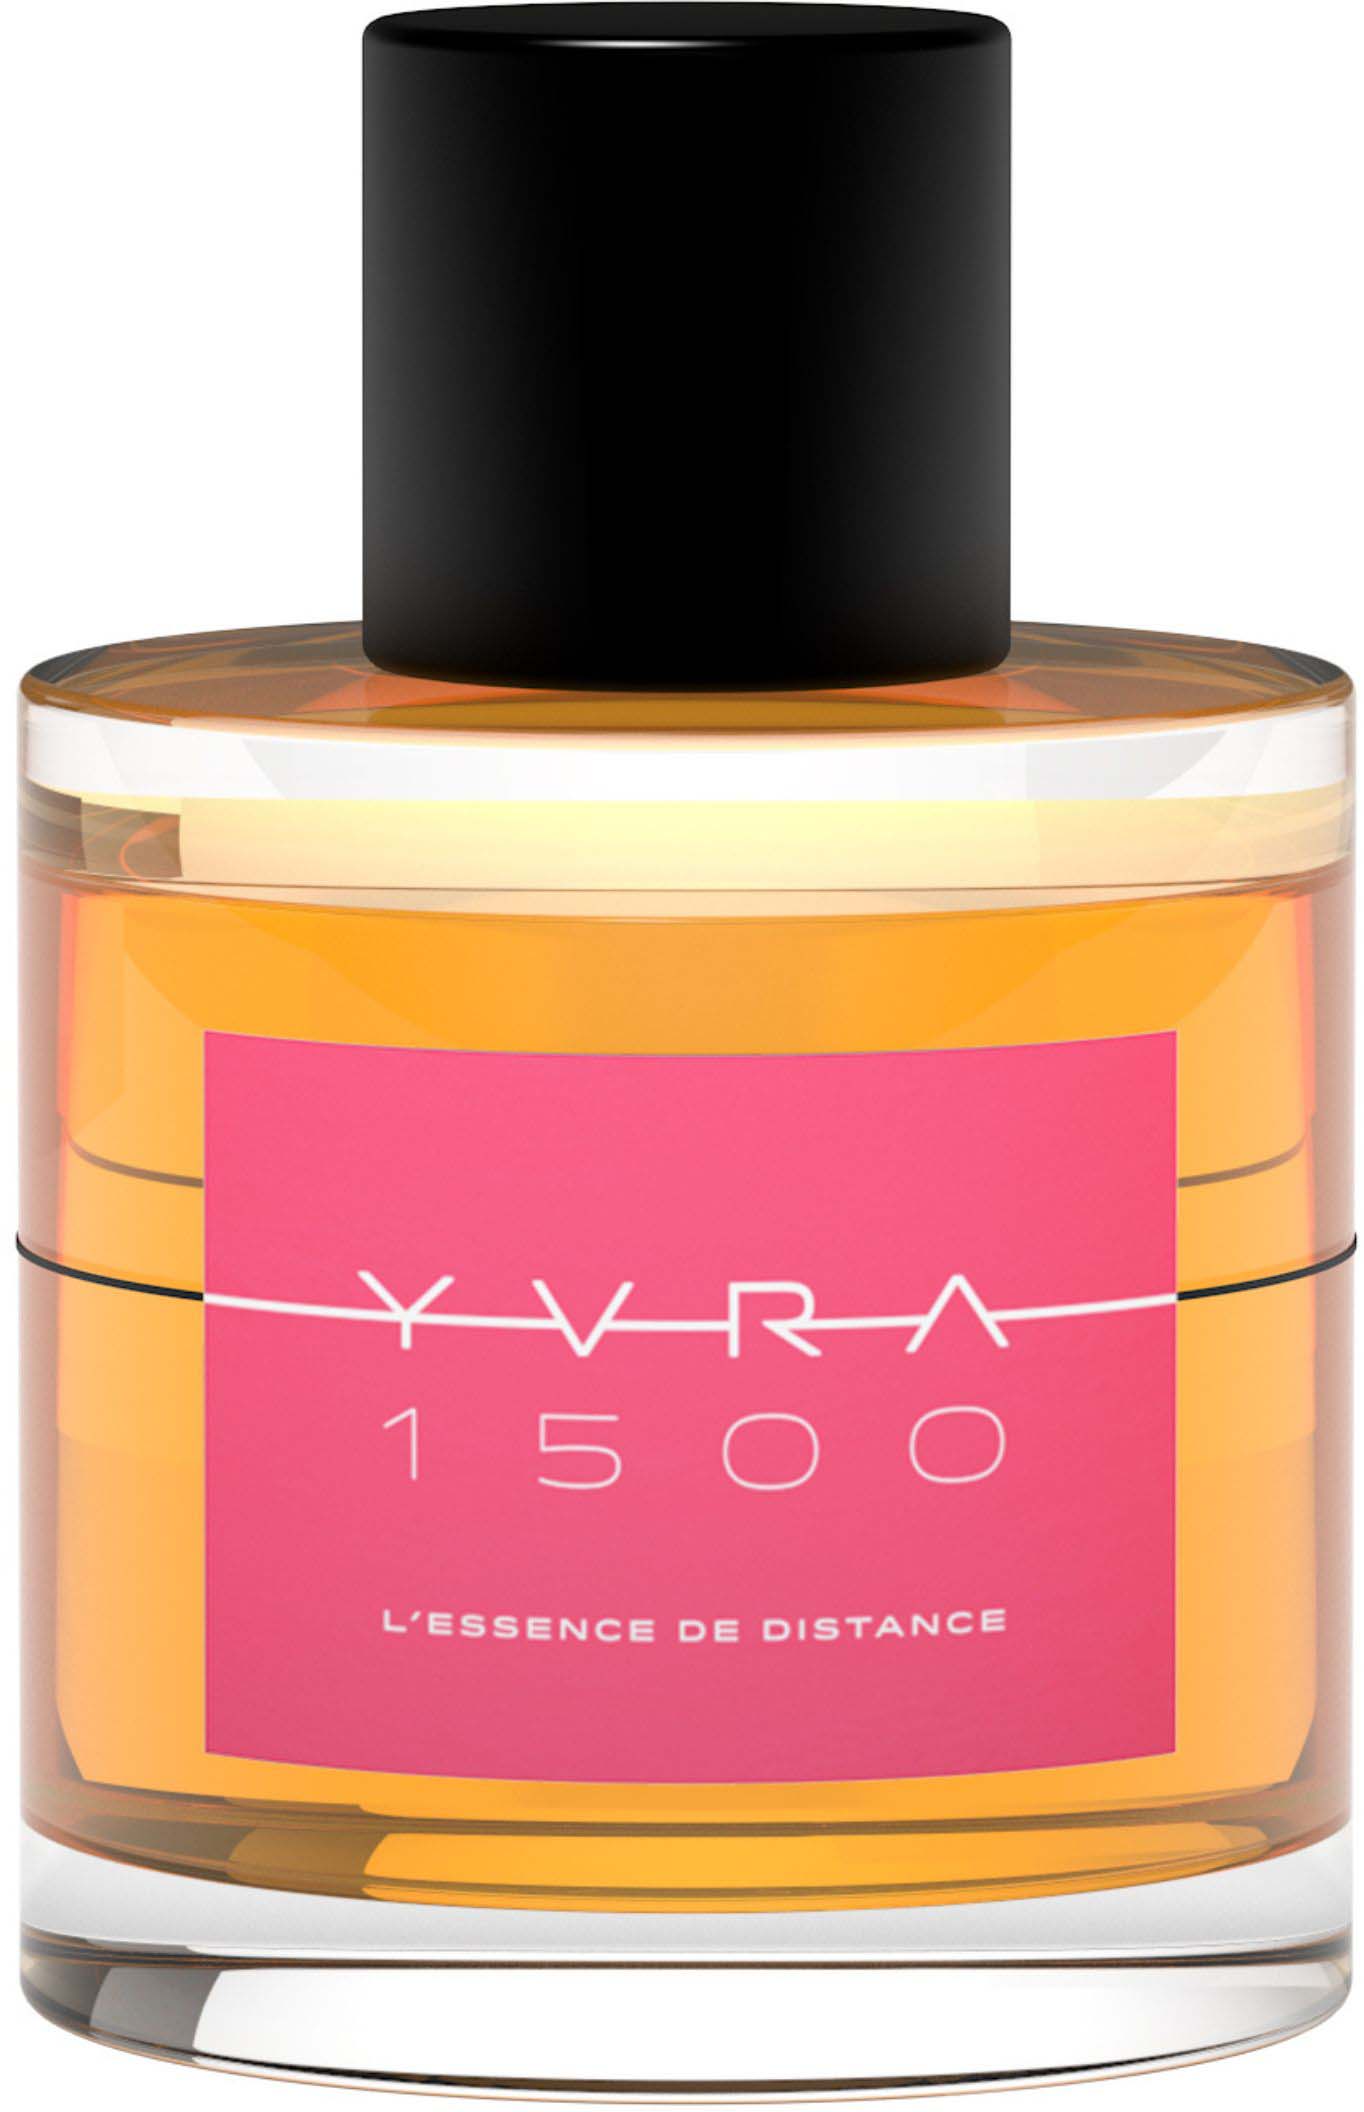 yvra 1500 - l'essence de distance woda perfumowana 100 ml   